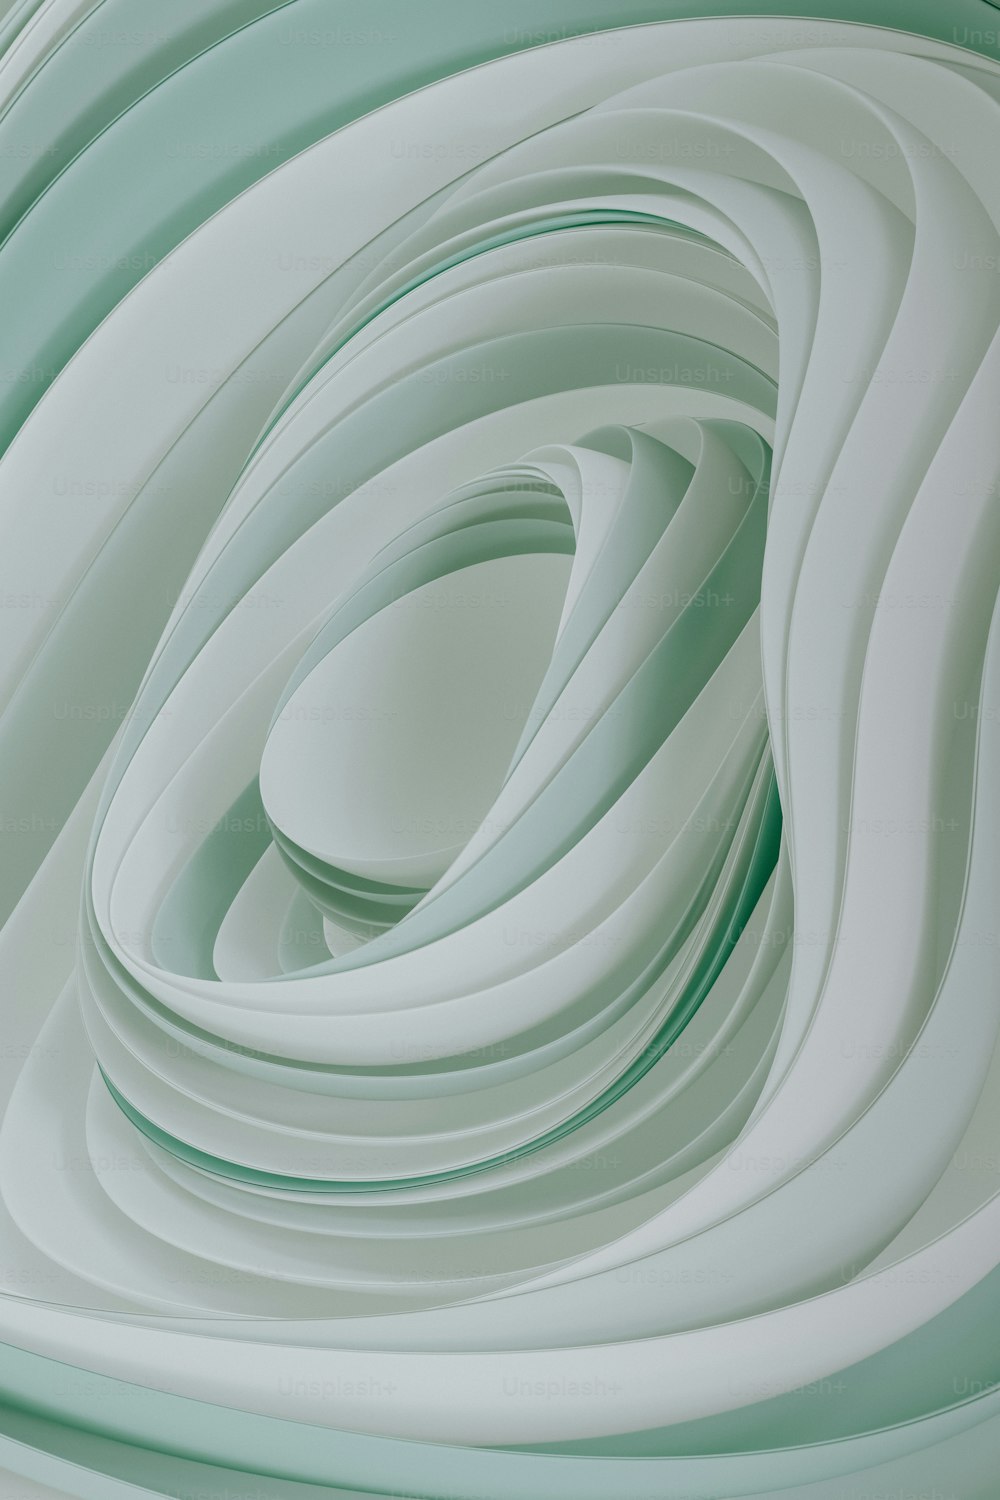 a close-up of a spiral